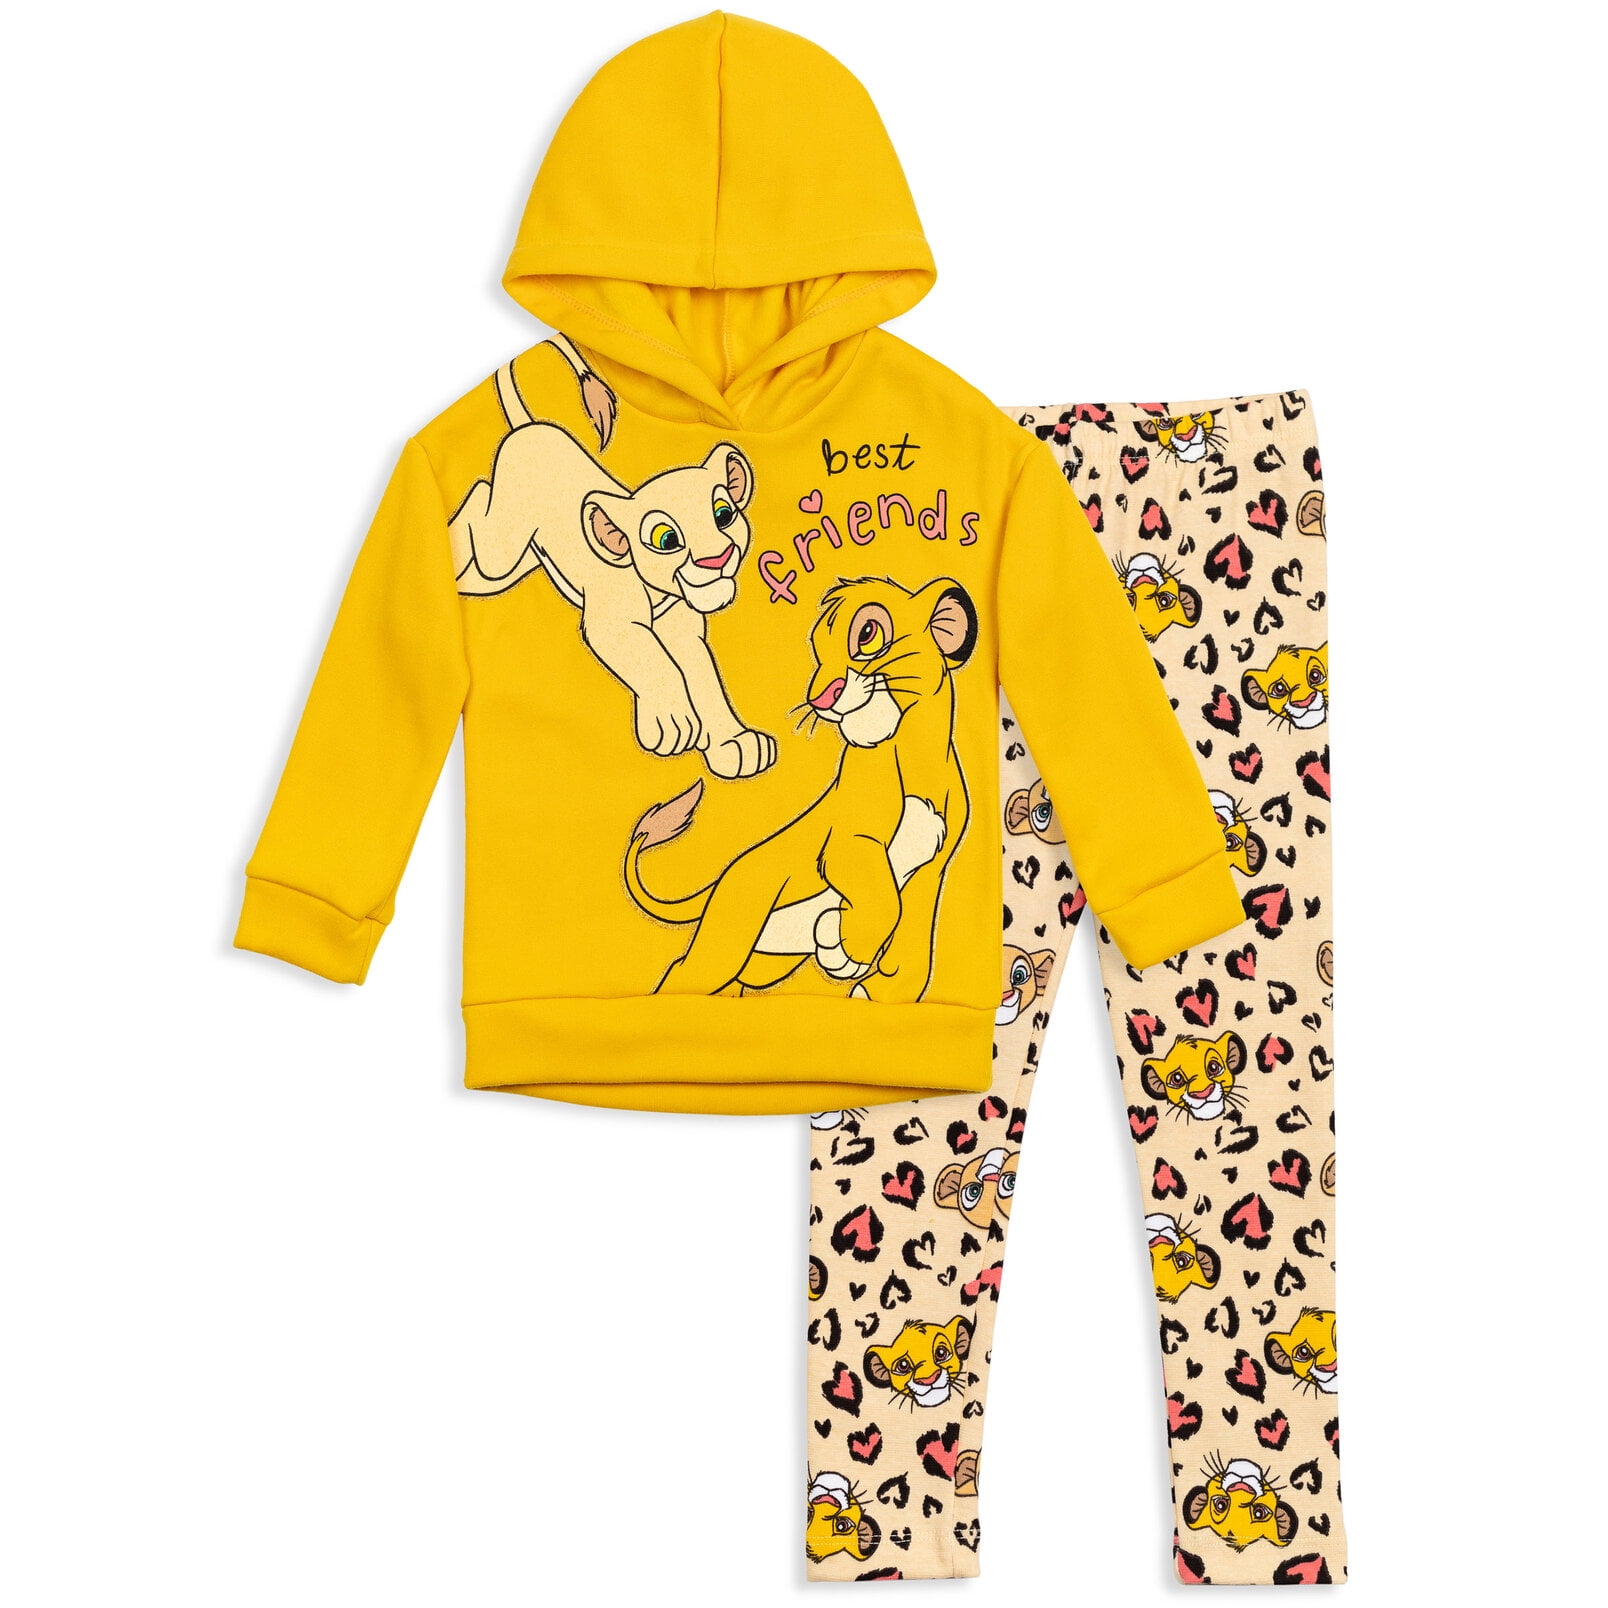 Disney Lion King Pyjama Set Girls Kids Full Pj Set Age 3-10 Years Nightwear 